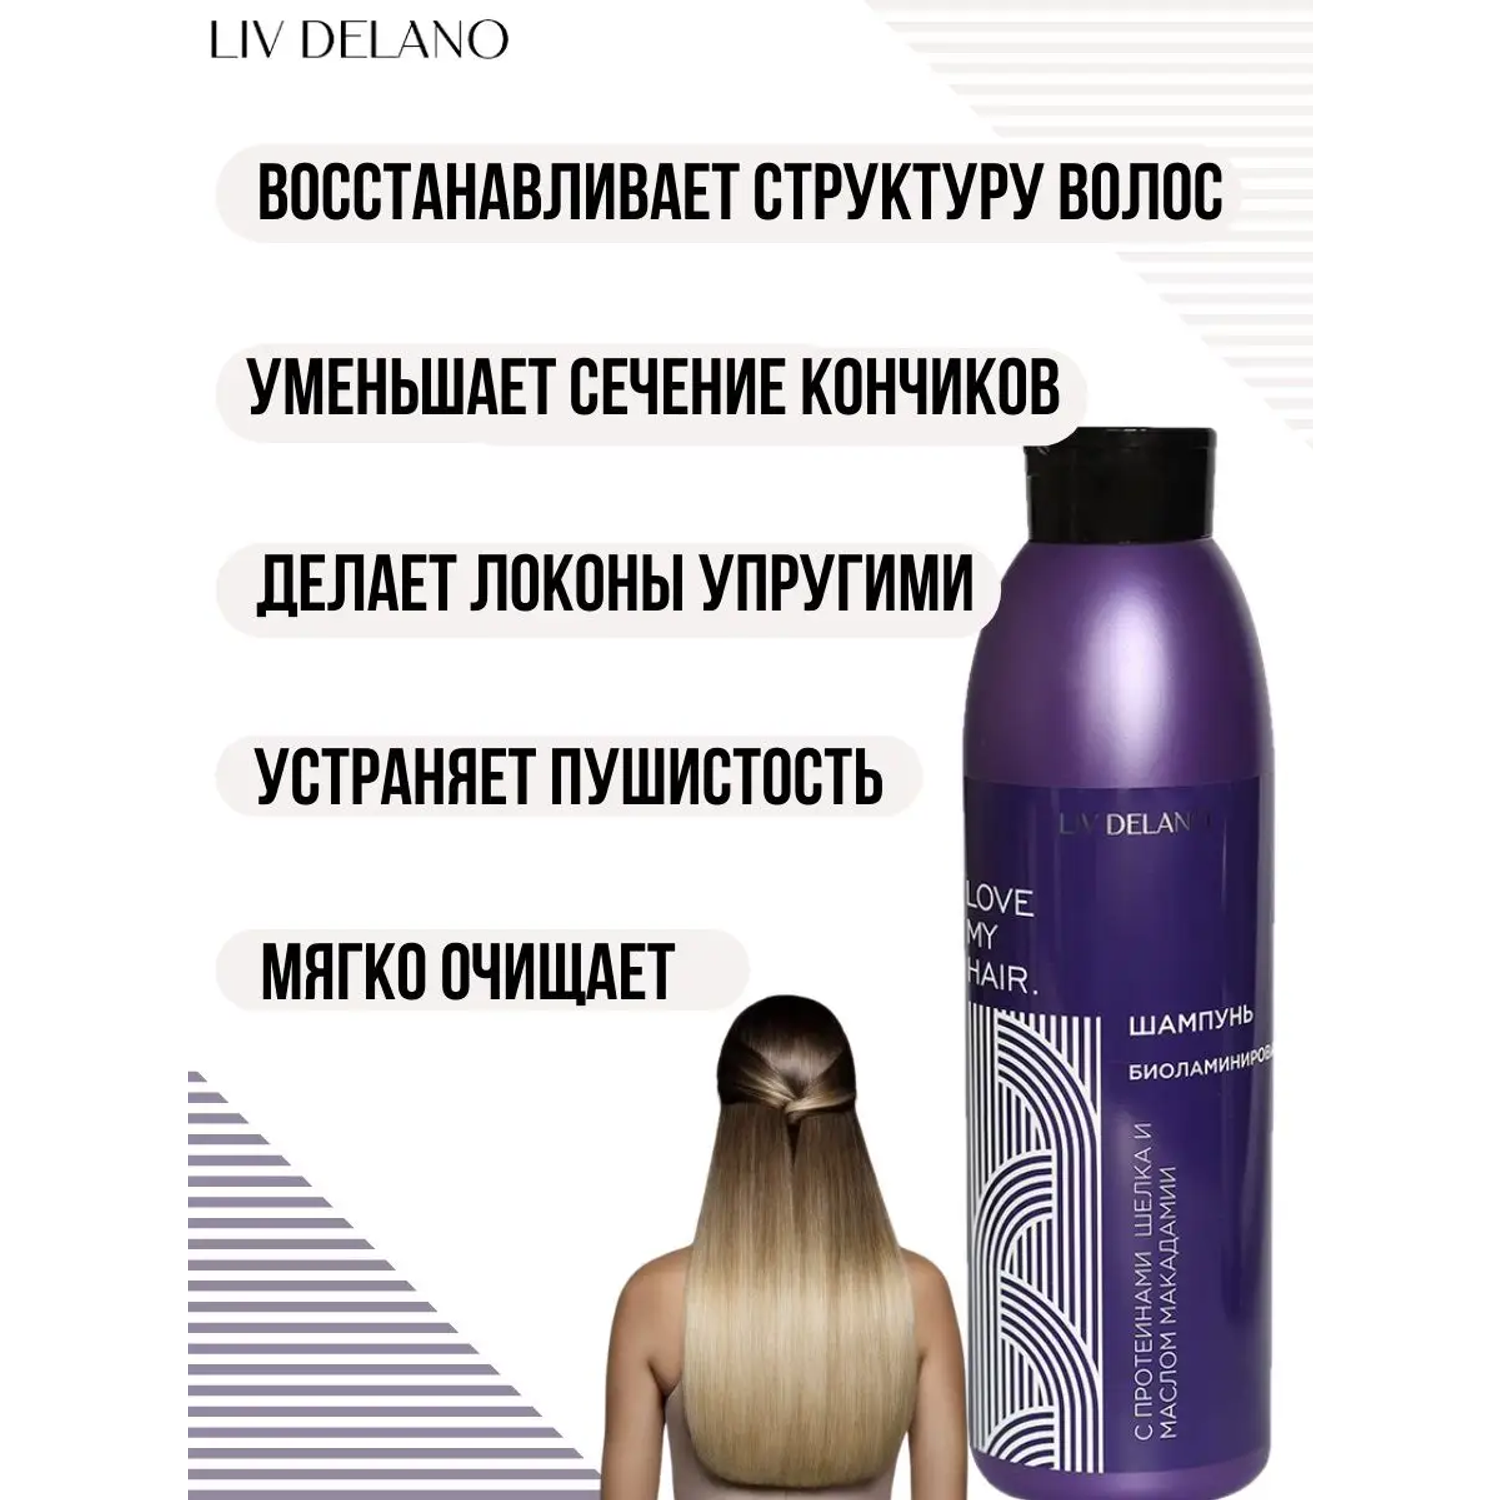 Шампунь для волос LIV DELANO Love my hair Биоламинирование С протеинами шелка и маслом макадамии 1000мл - фото 3